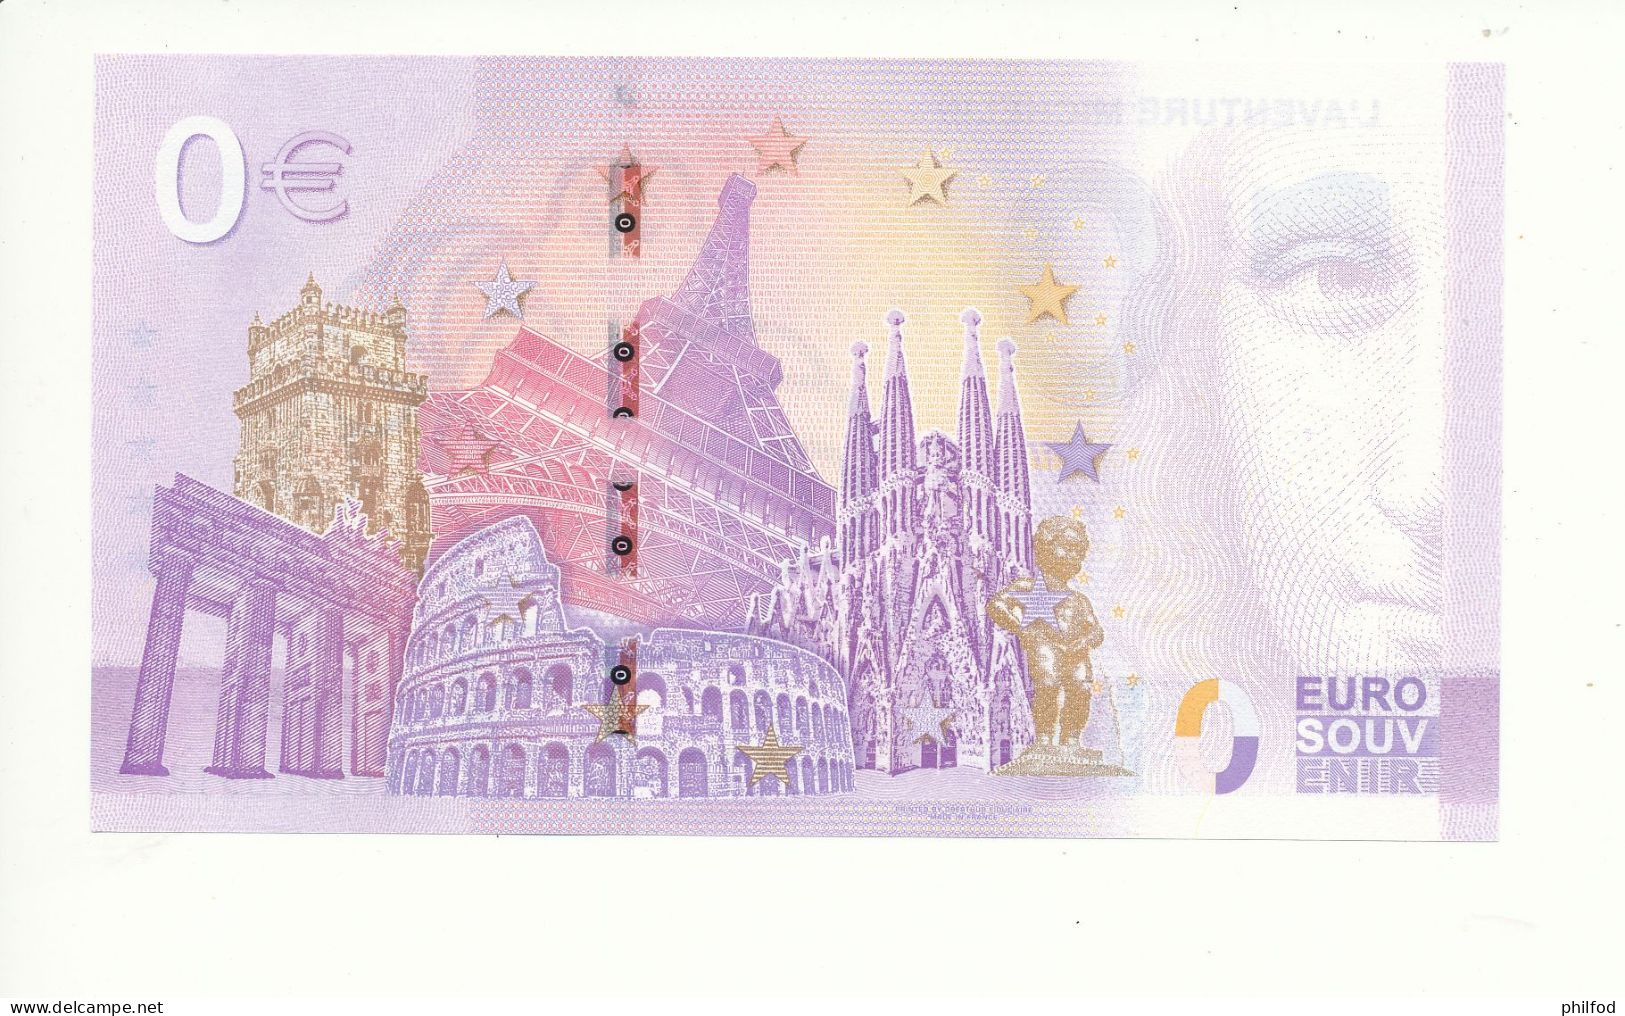 Billet Souvenir - 0 Euro - L'AVENTURE MICHELIN - UEGS - 2023-6 - N° 512 - Alla Rinfusa - Banconote